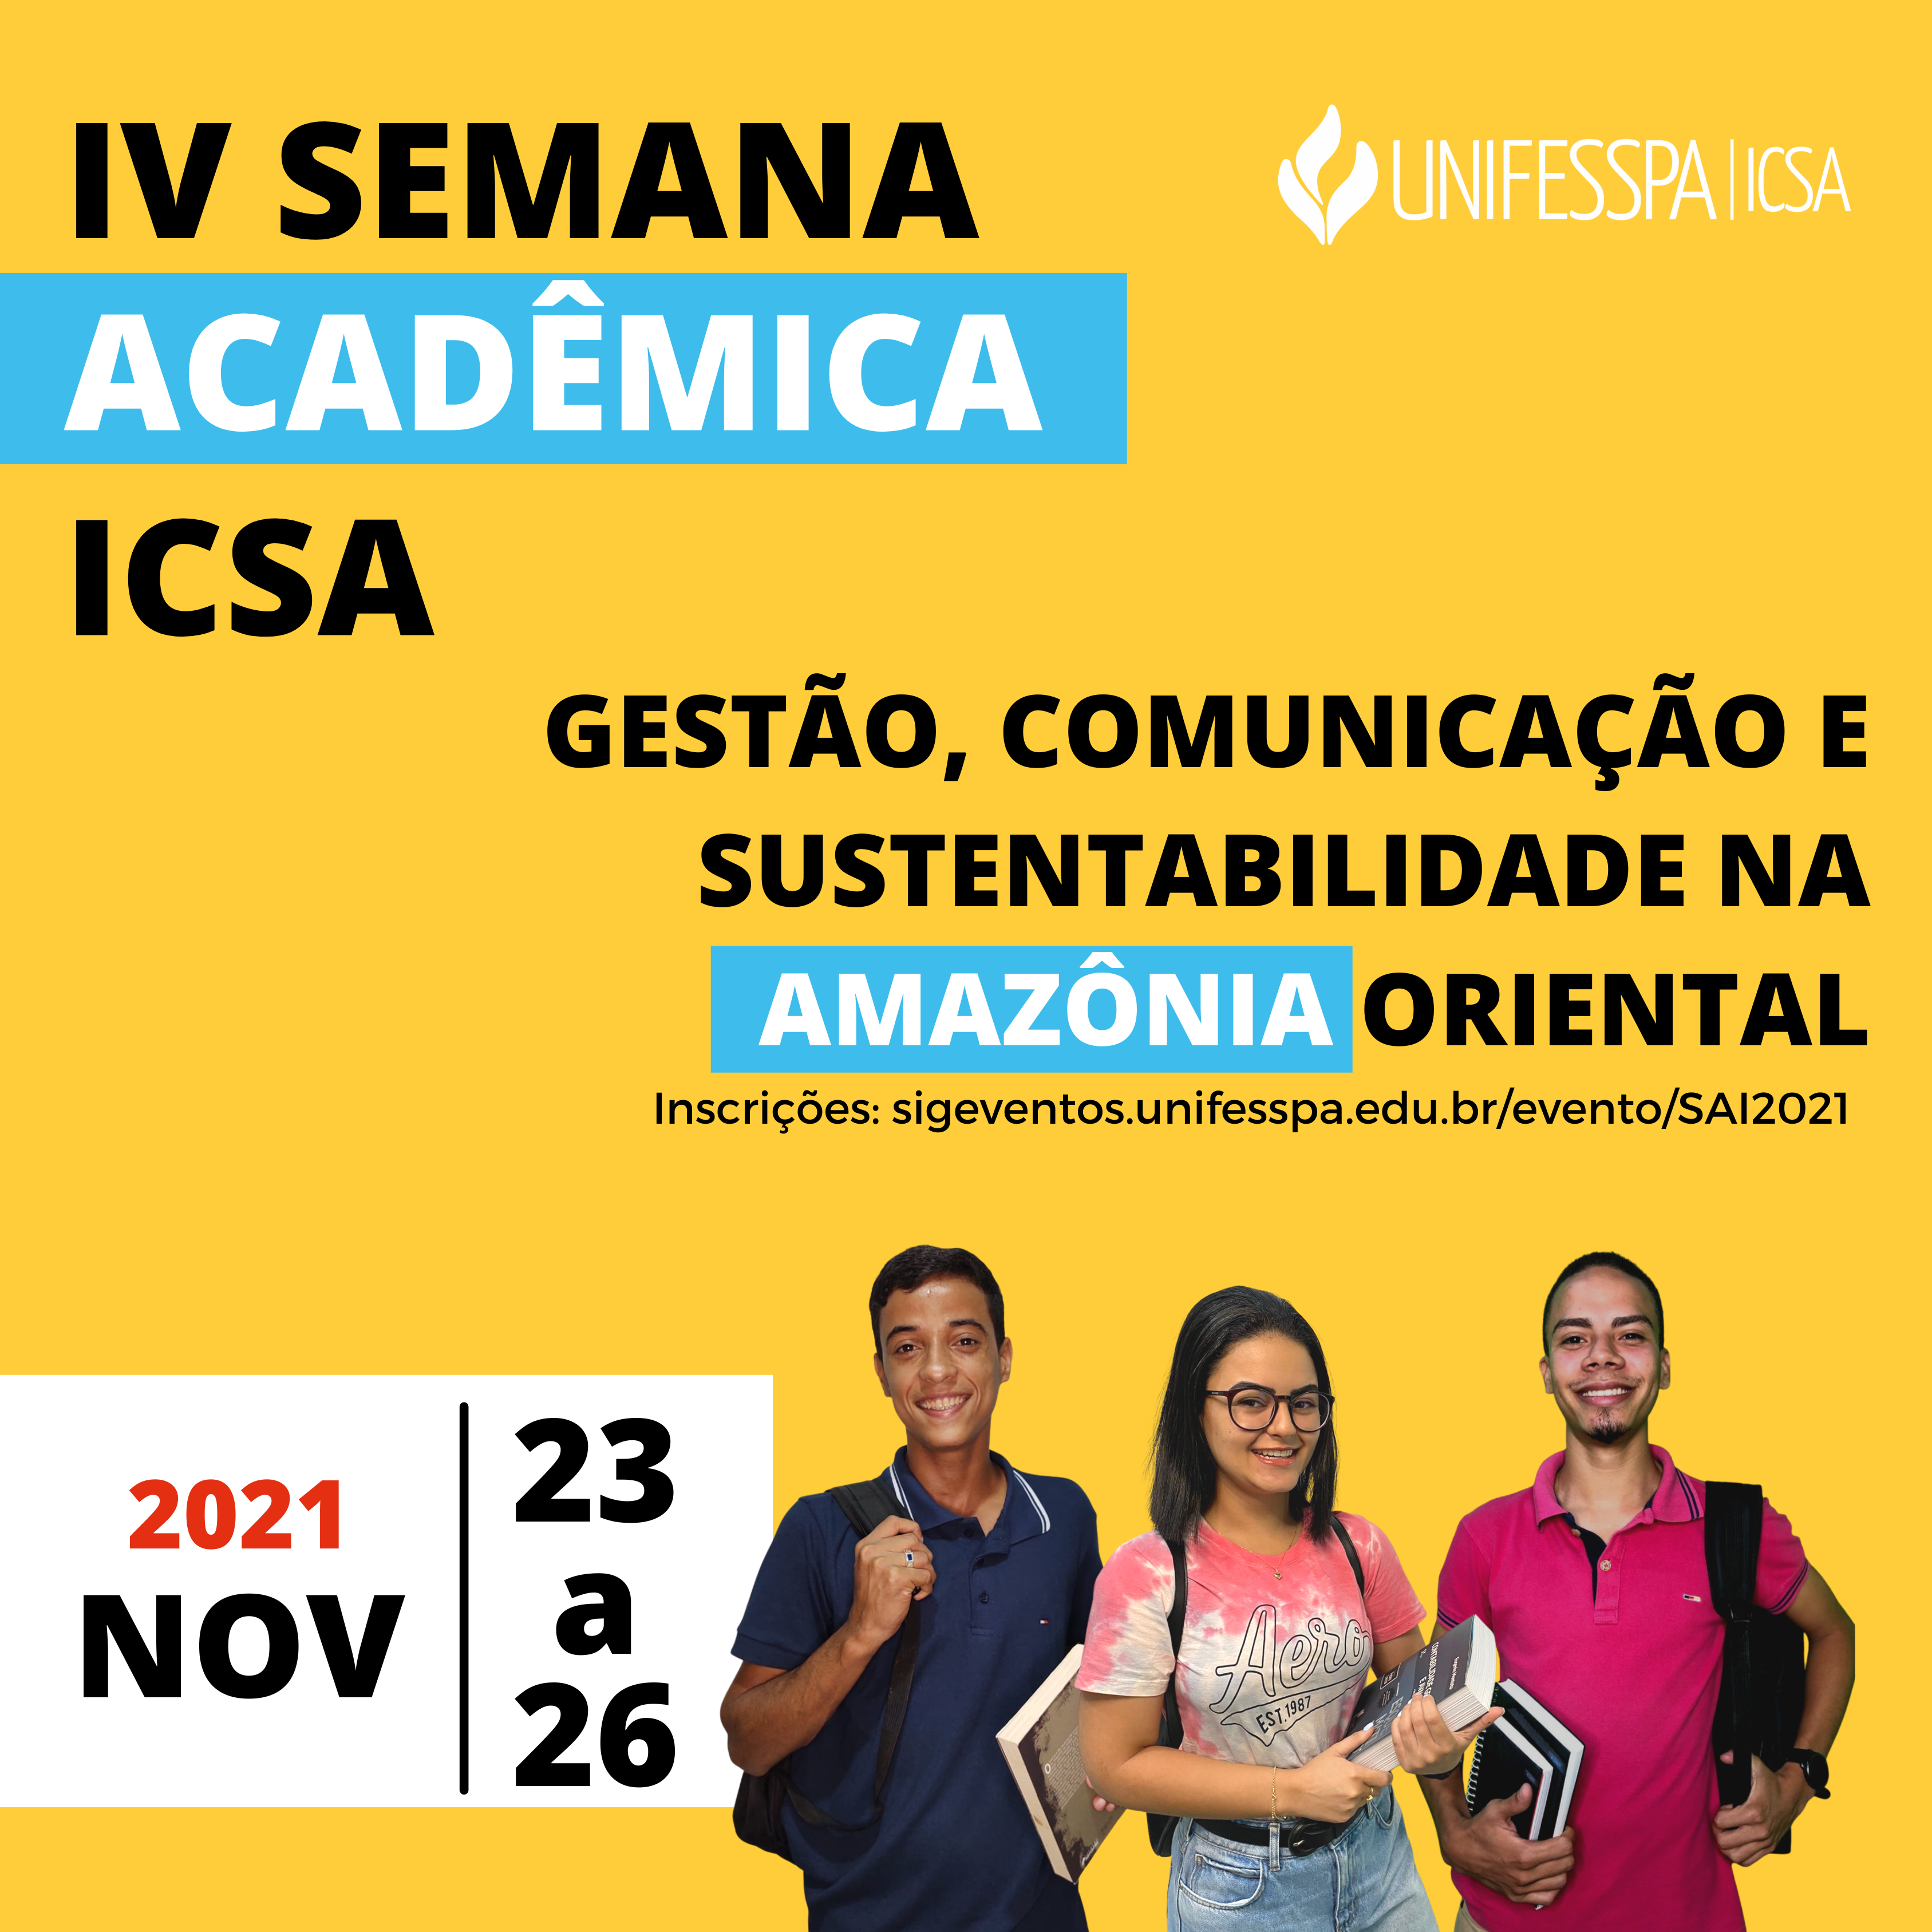 Agência desenvolve material de divulgação da Semana Acadêmica do ICSA